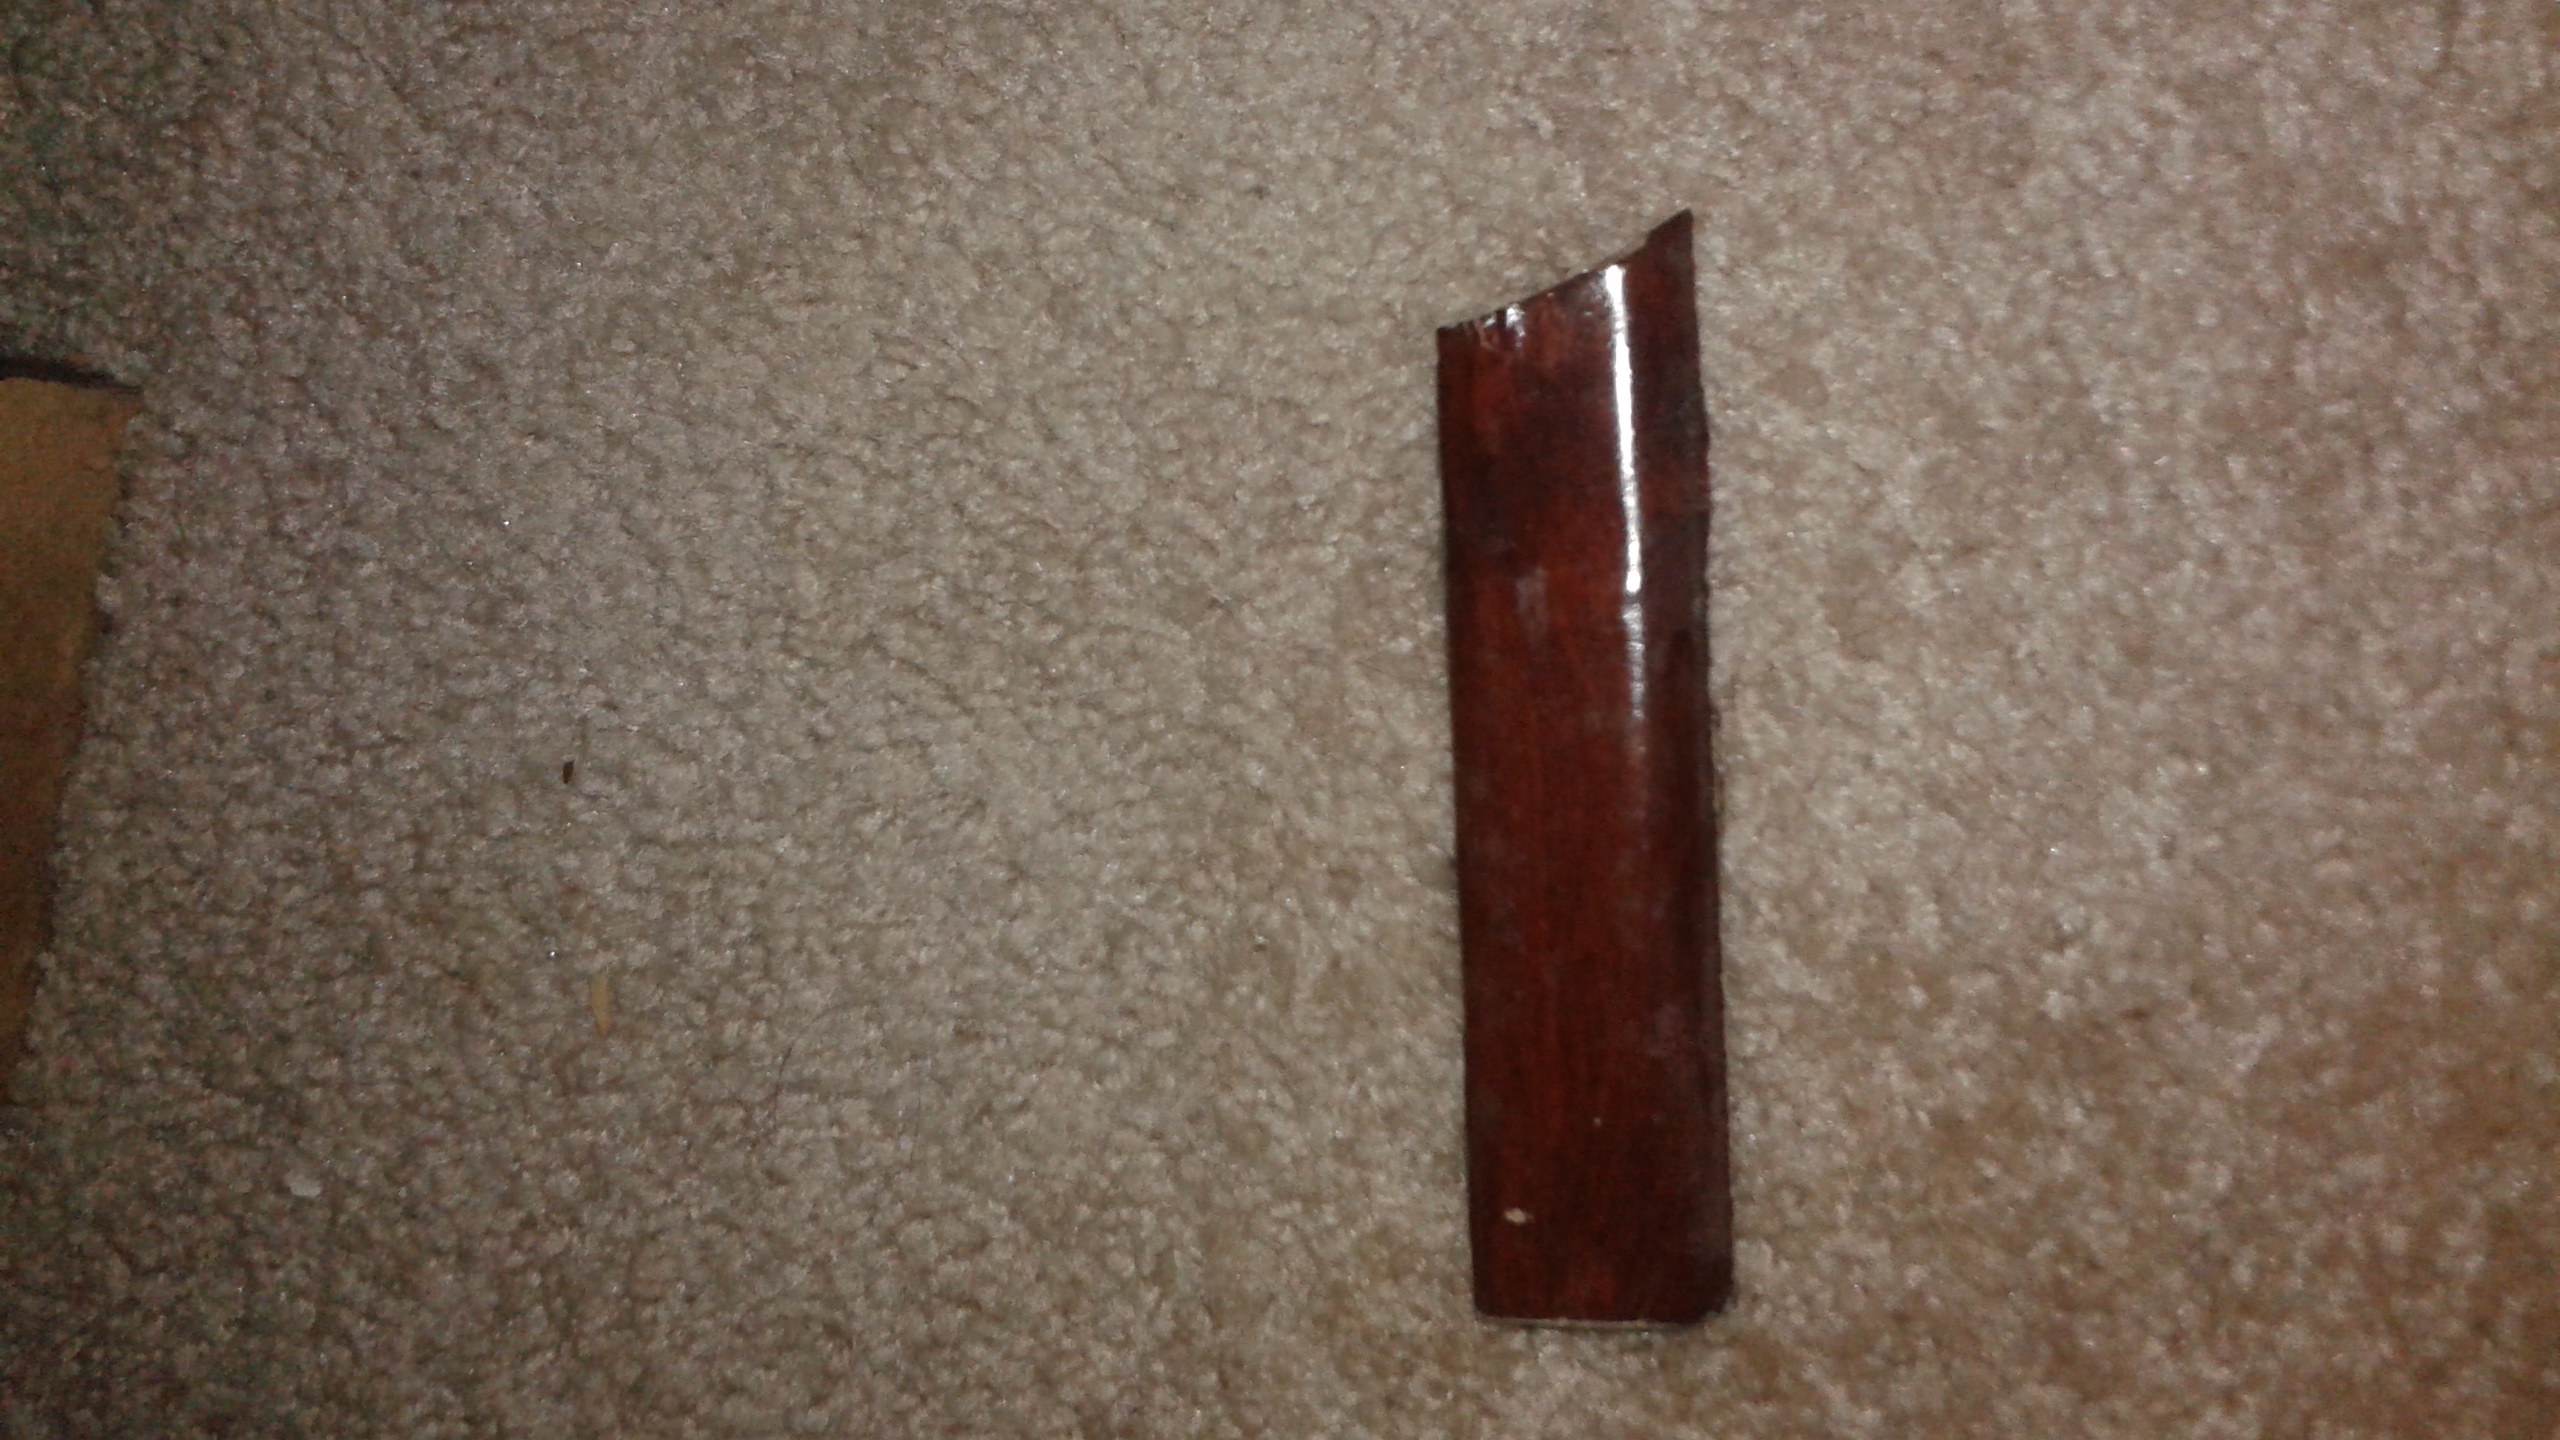 Piece of wood broken from nightstand